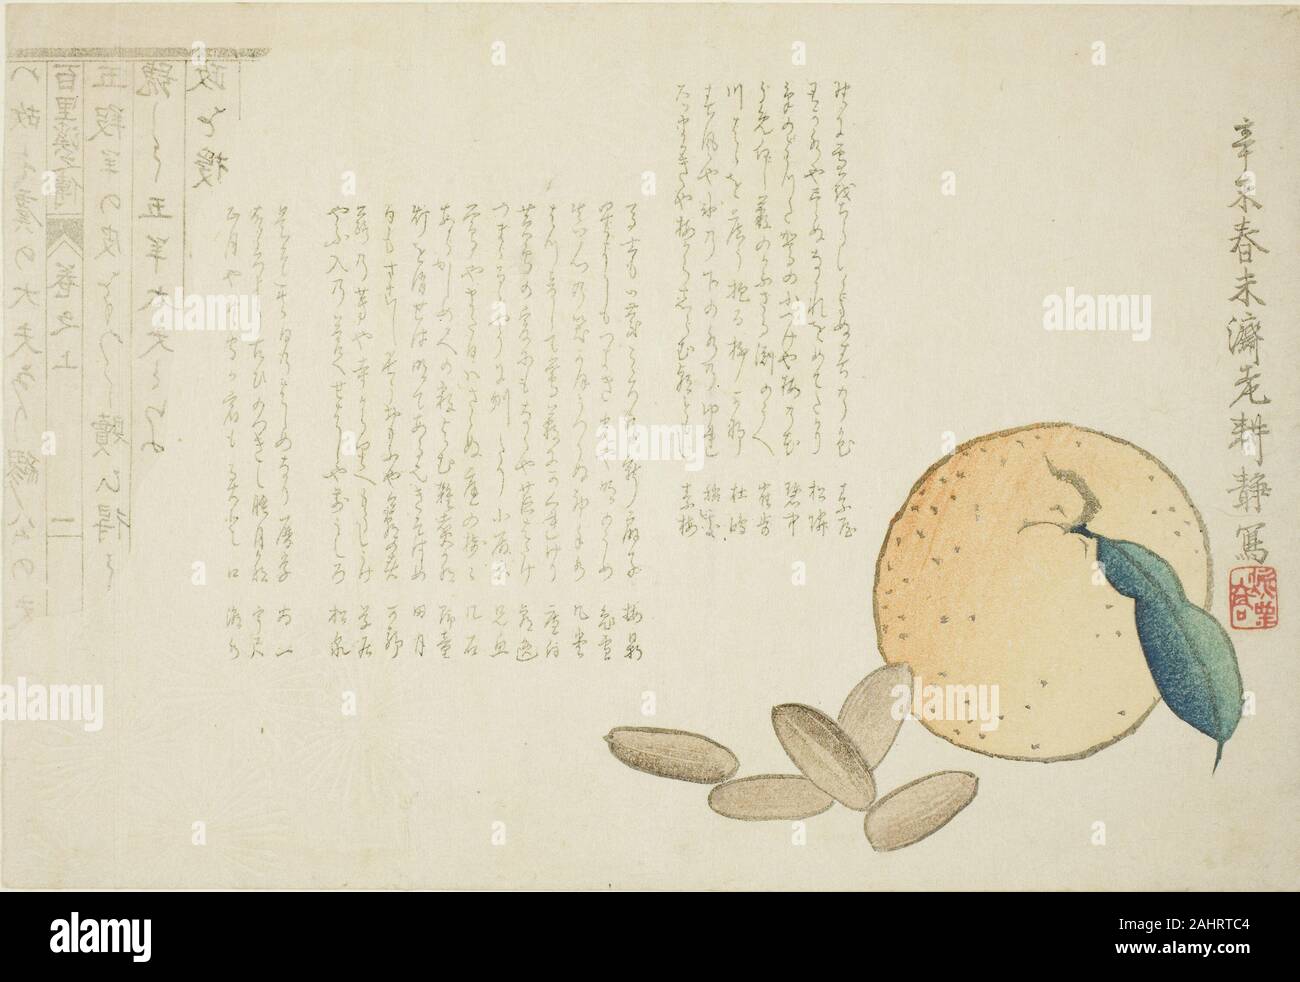 Kosei. La mandarine et la légende chinoise. 1871. Le Japon. Estampe surimono couleur ; cette impression est une scène d'été produit finement avec une mandarine et des écrous sur le papier gaufré chrysanthème-design. La tranche gauche montre un morceau de papier de l'arrière, astucieusement indiquant le papier sur lequel les objets ont été placés.Le papier (avec ses personnages en marche arrière) décrit la biographie du héros chinois Baili Xi, qui était un premier ministre de l'état de Qin durant la période des Printemps et Automnes dans l'ancienne Chine. Avec l'aide de l'état Qin, Baili a été en mesure de faire la guerre et faire la paix Banque D'Images